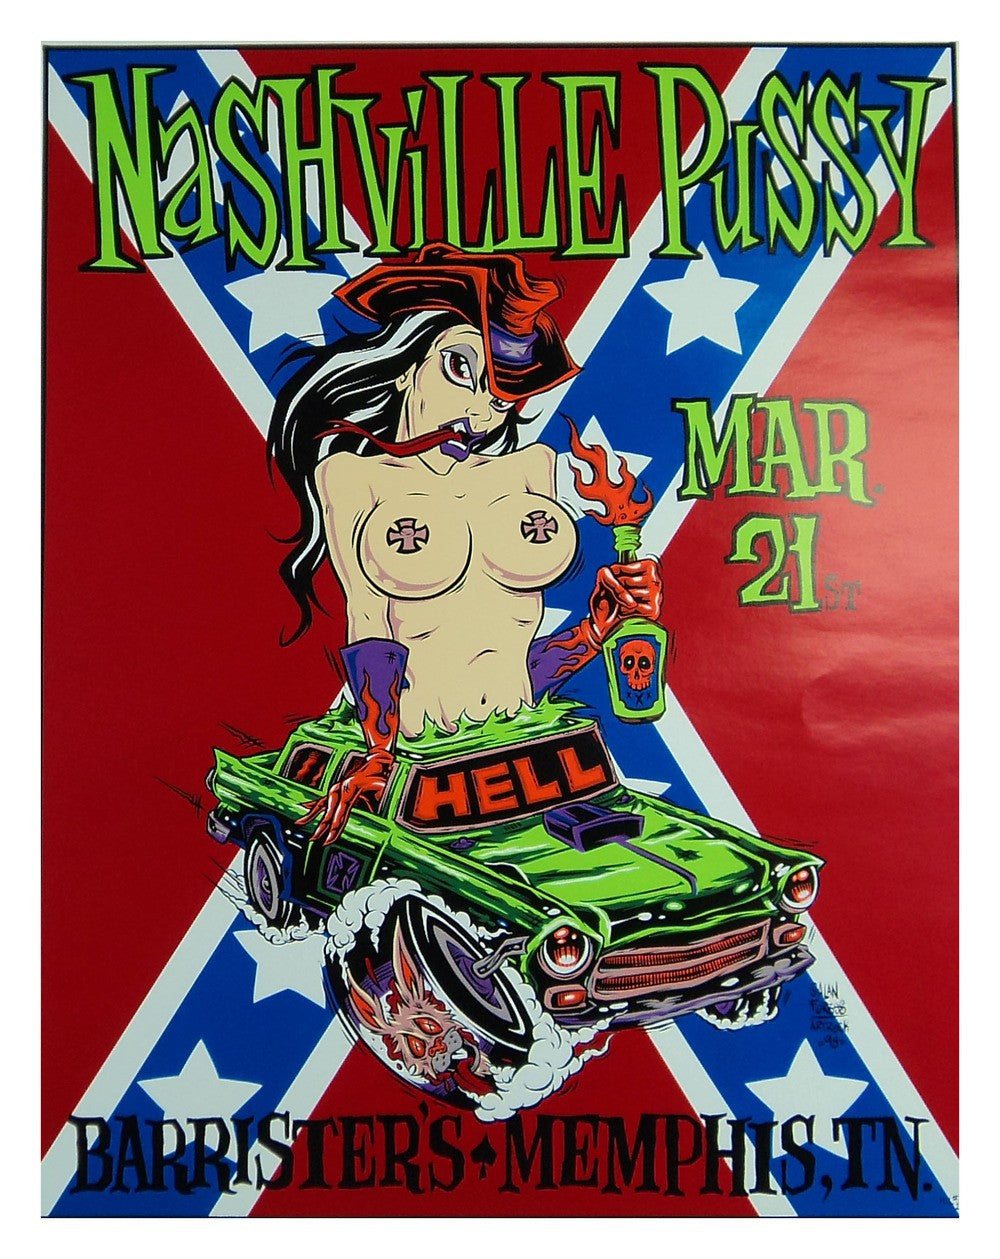 Alan Forbes - 1998 - Nashville Pussy Concert Poster